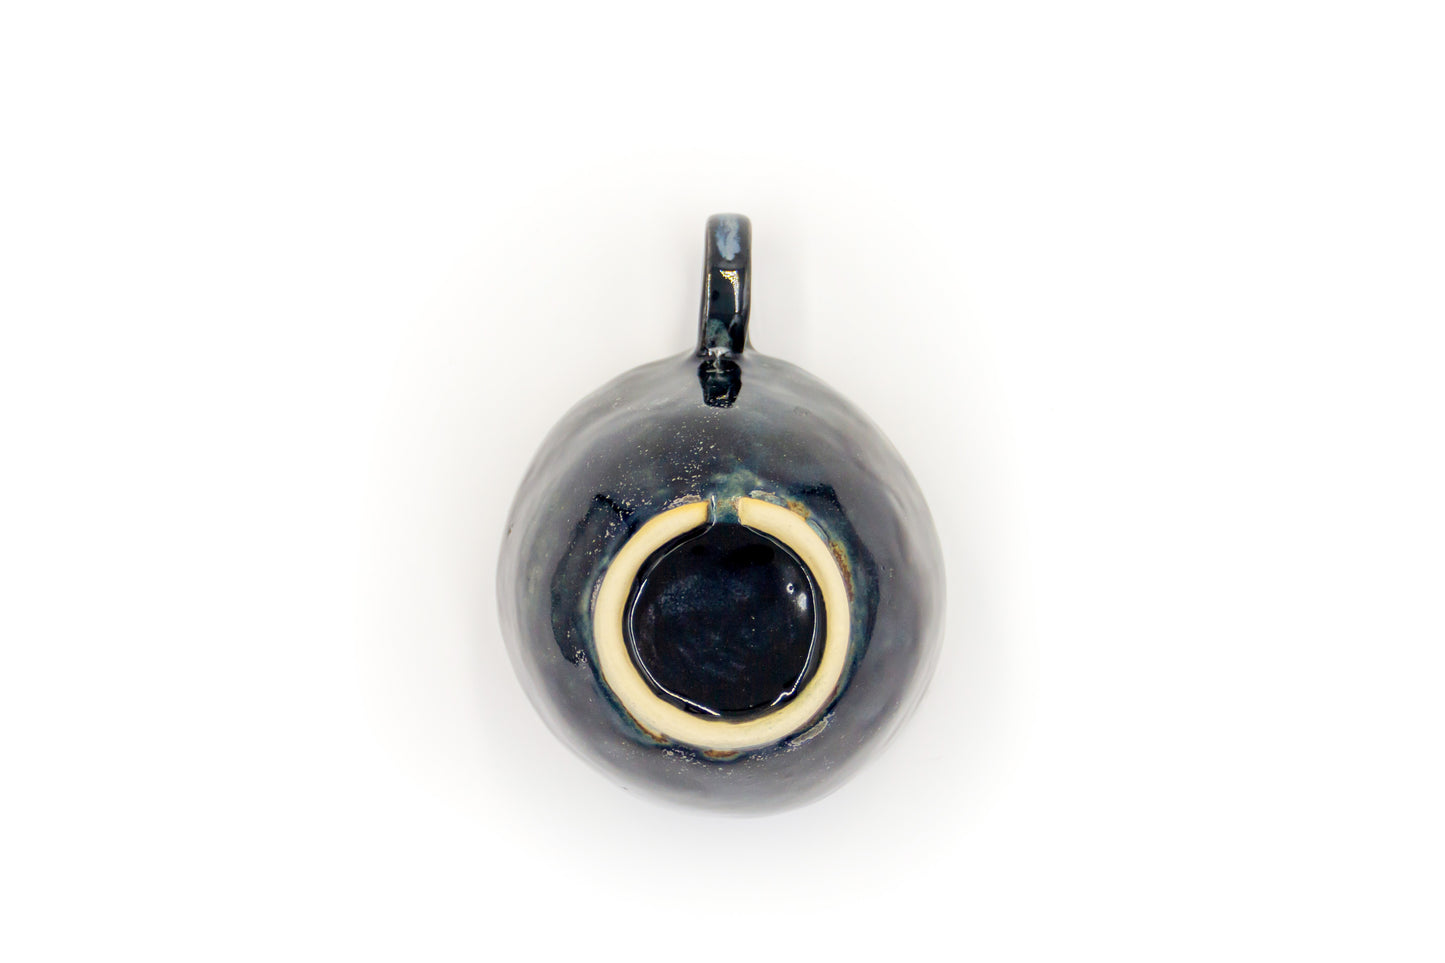 Kubek ceramiczny w kolorze czarno-granatowym